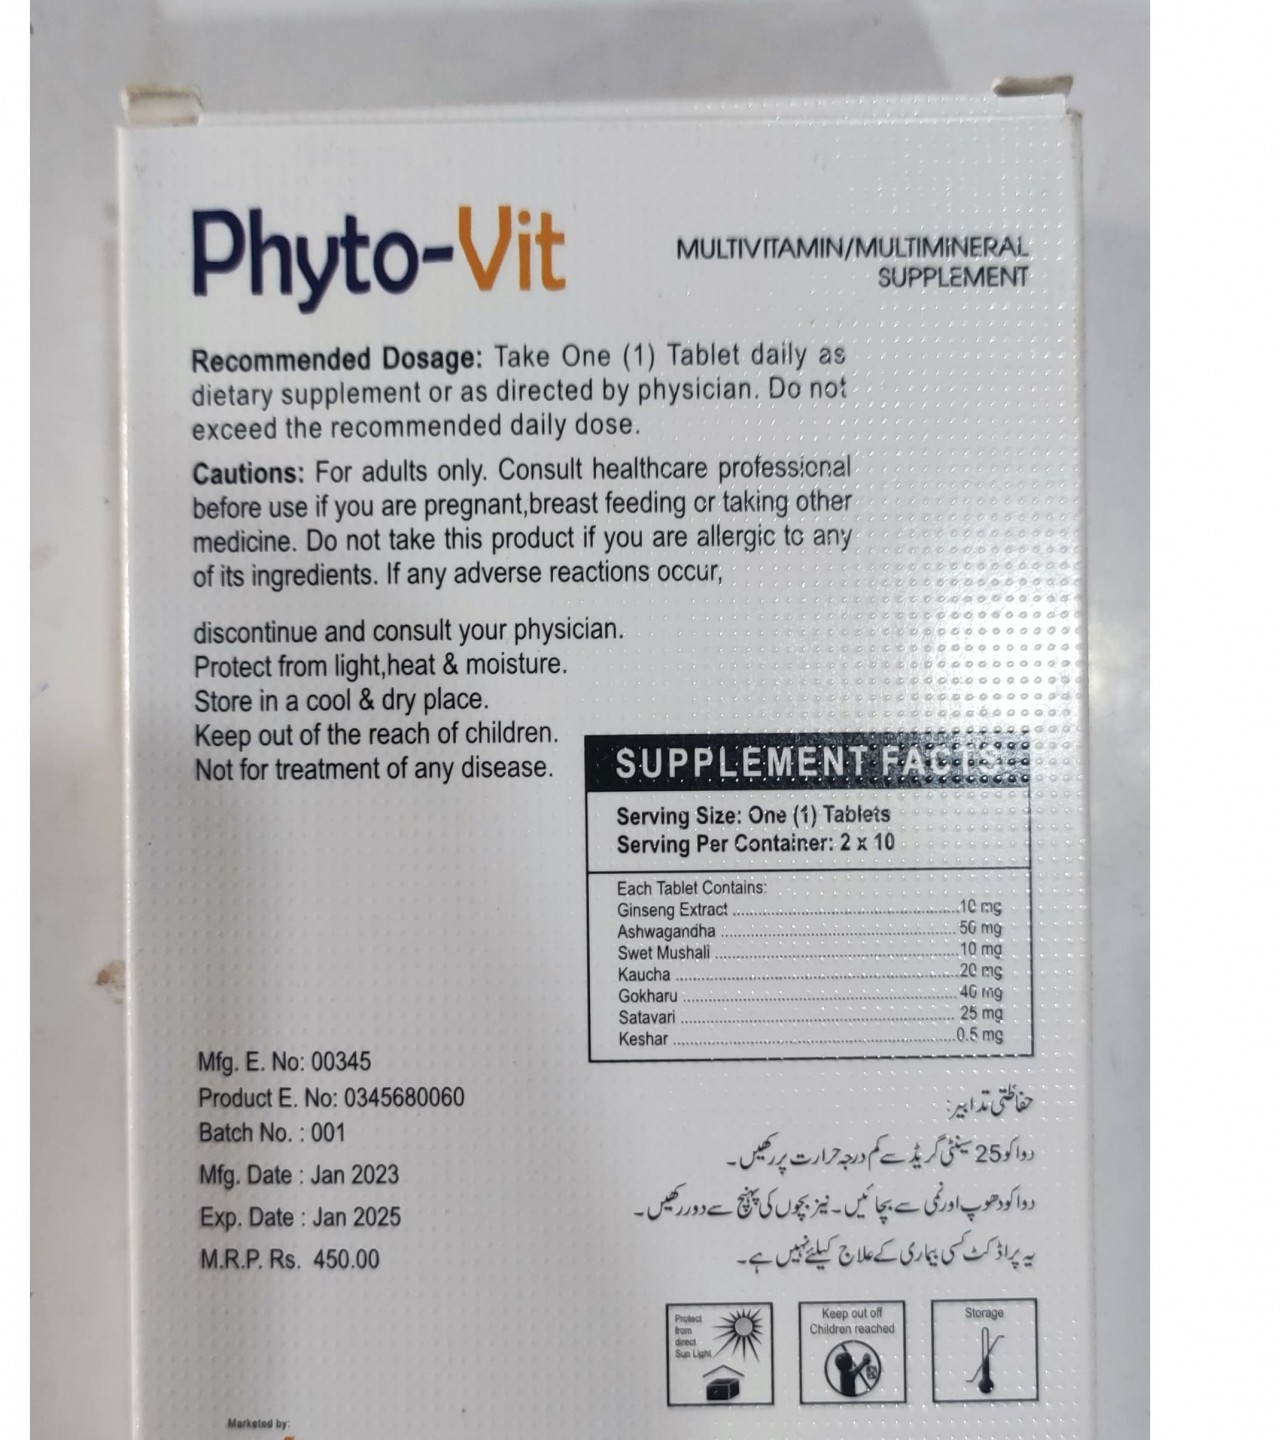 PHYTO-Vit Multivitamin/Multimeniral Suppliment.